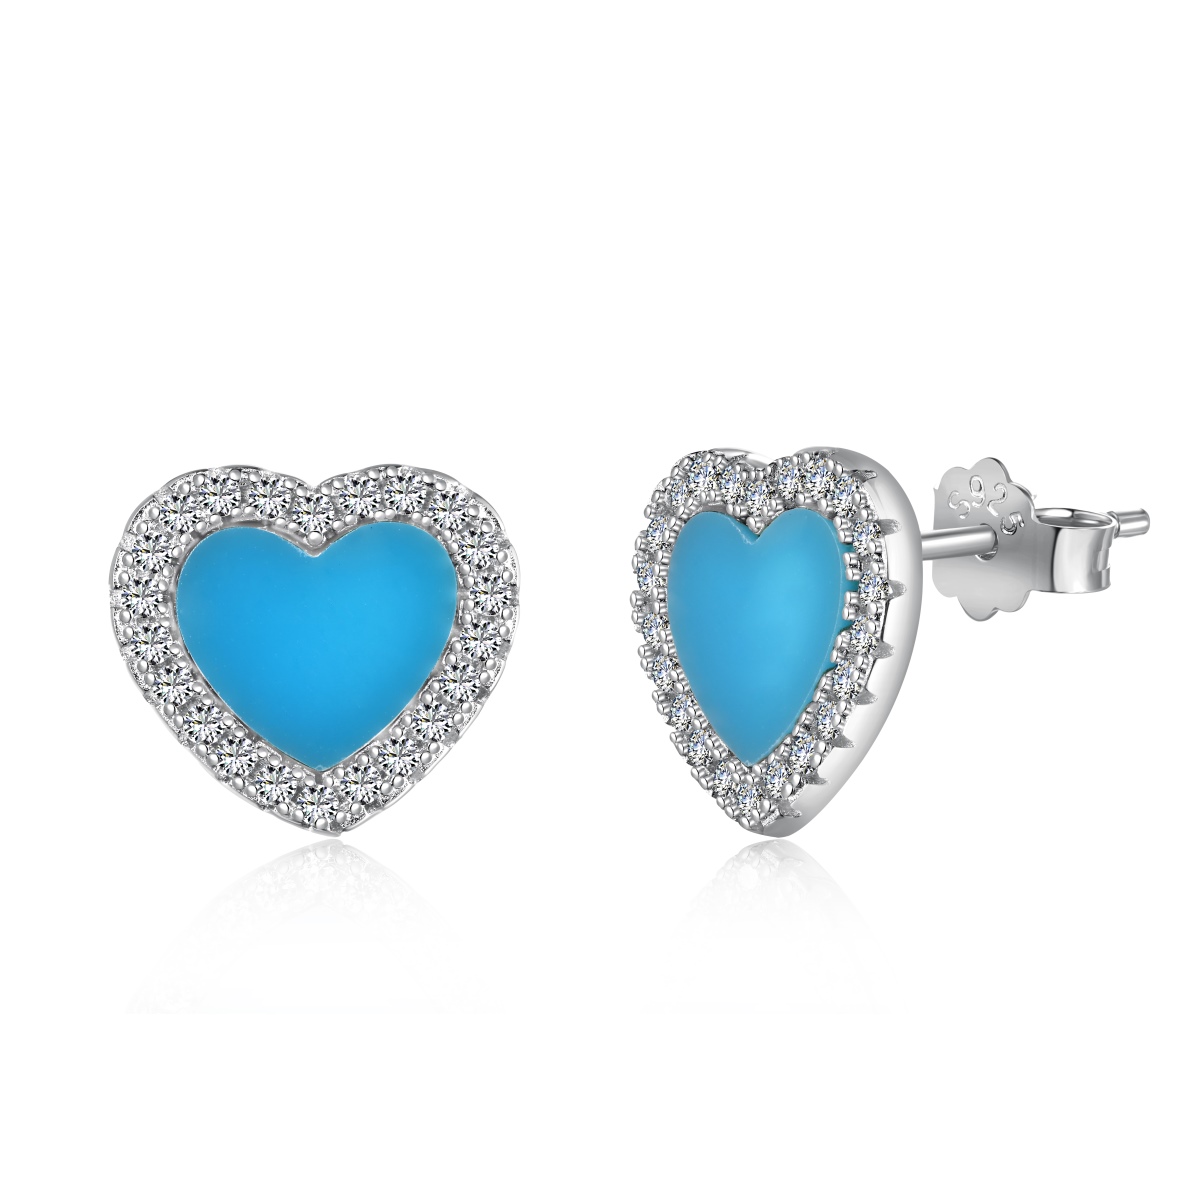 Blue Love Halo Sterling Silver Earrings